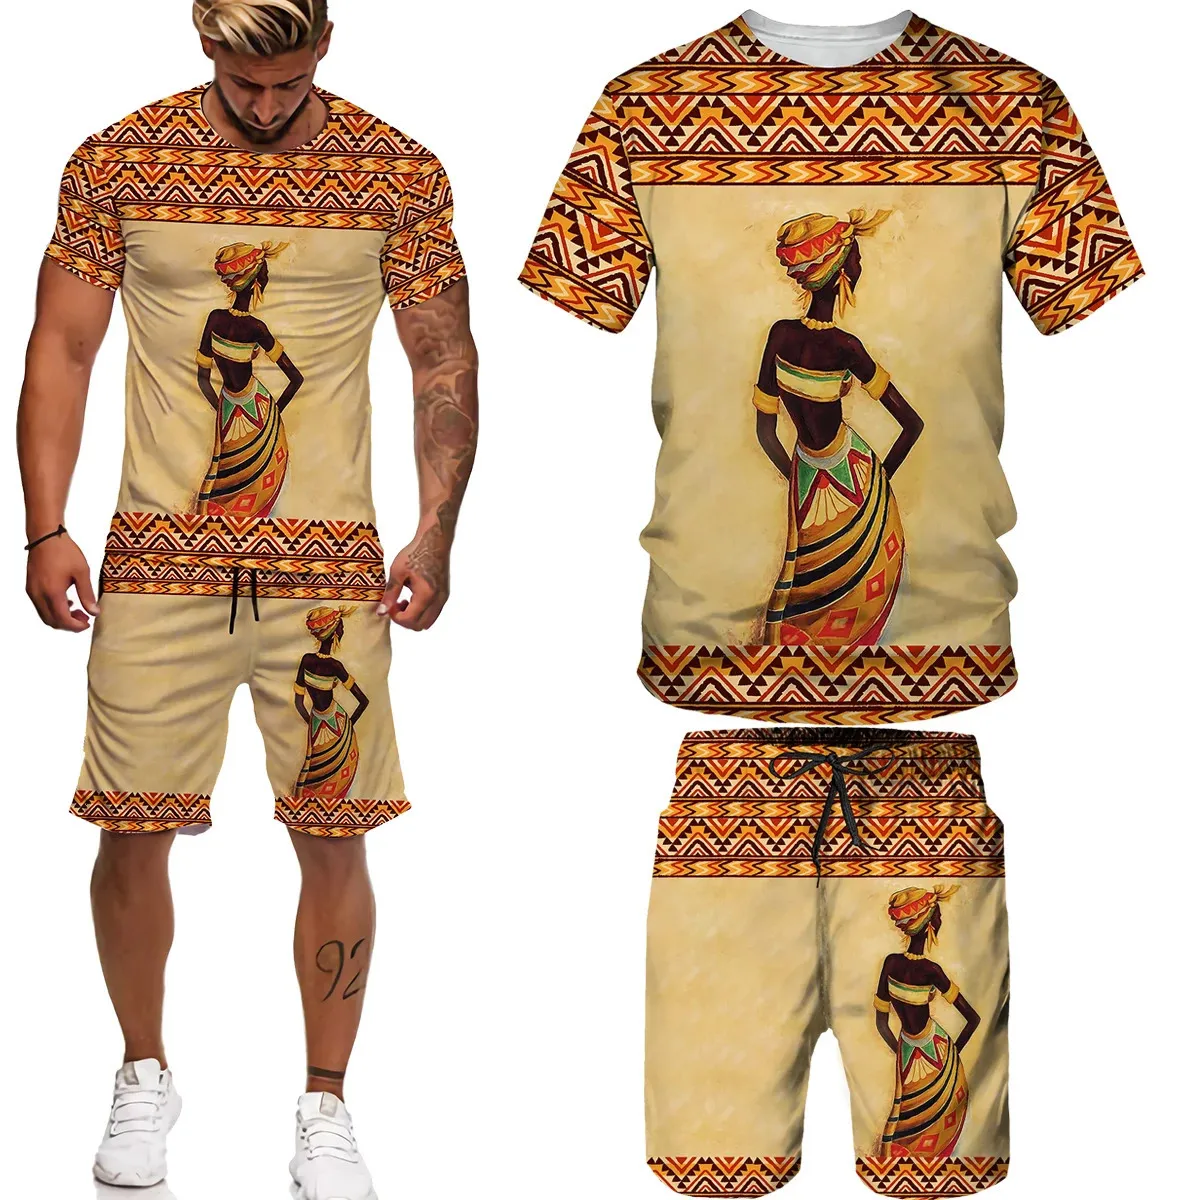 Man Zomer Korte Mouw Afrika Print TeesShortsSuits Folkcustom T-shirt Shorts Trainingspak Set Afrikaanse Kleding voor Mannen 002 240228